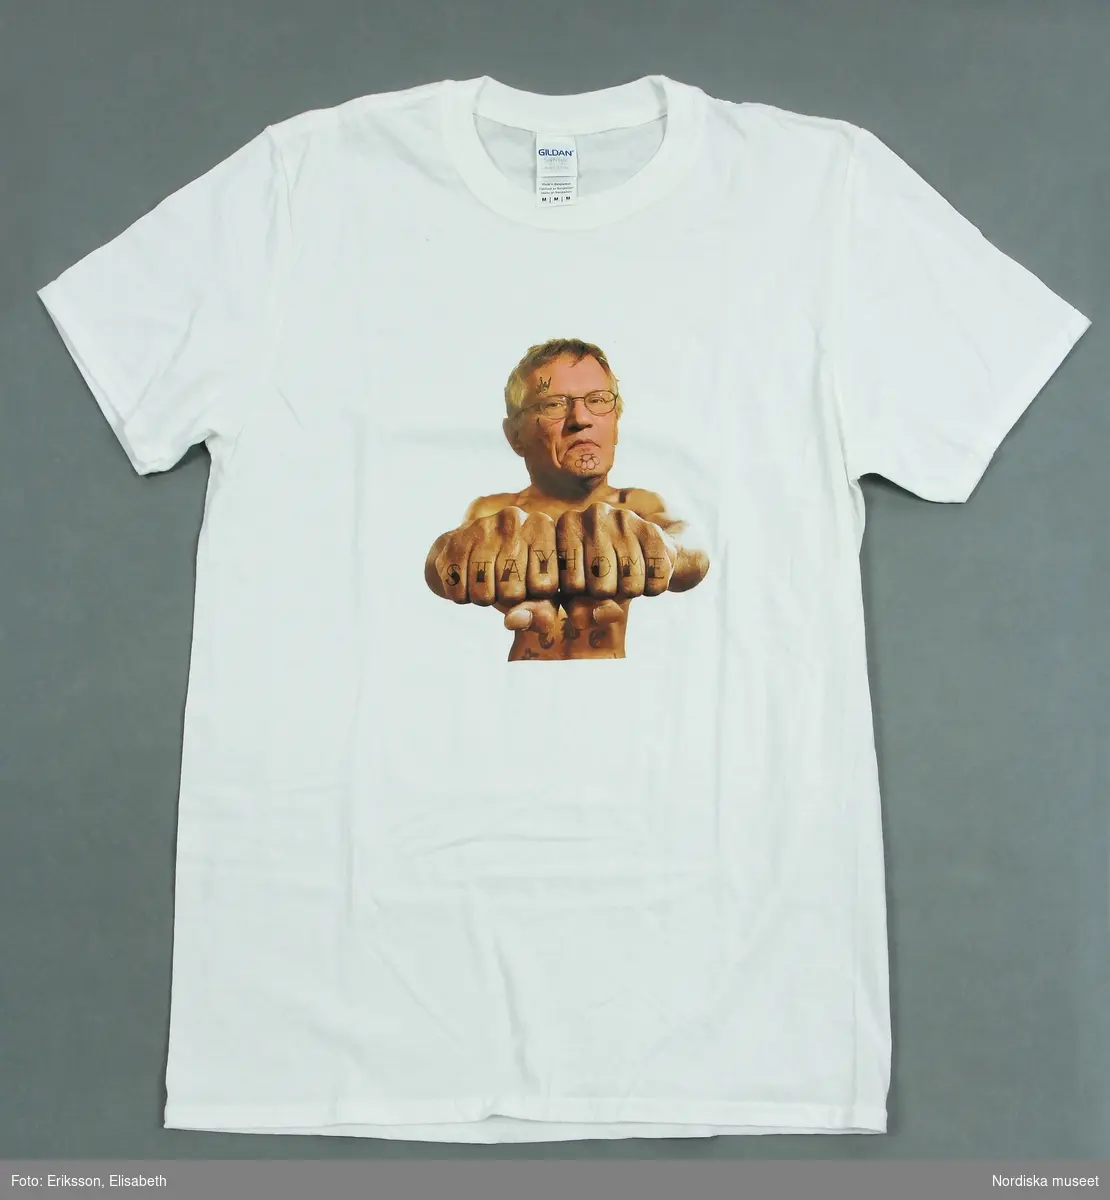 Vit t-shirt med färgtryck med portträttbild av Anders Tegnell, statsepidemiolog vid Folkhälsomyndigheten under Coronapandemin 2020-2021, samt texten "Stay home".
/Anna Fredholm 2021-12-09